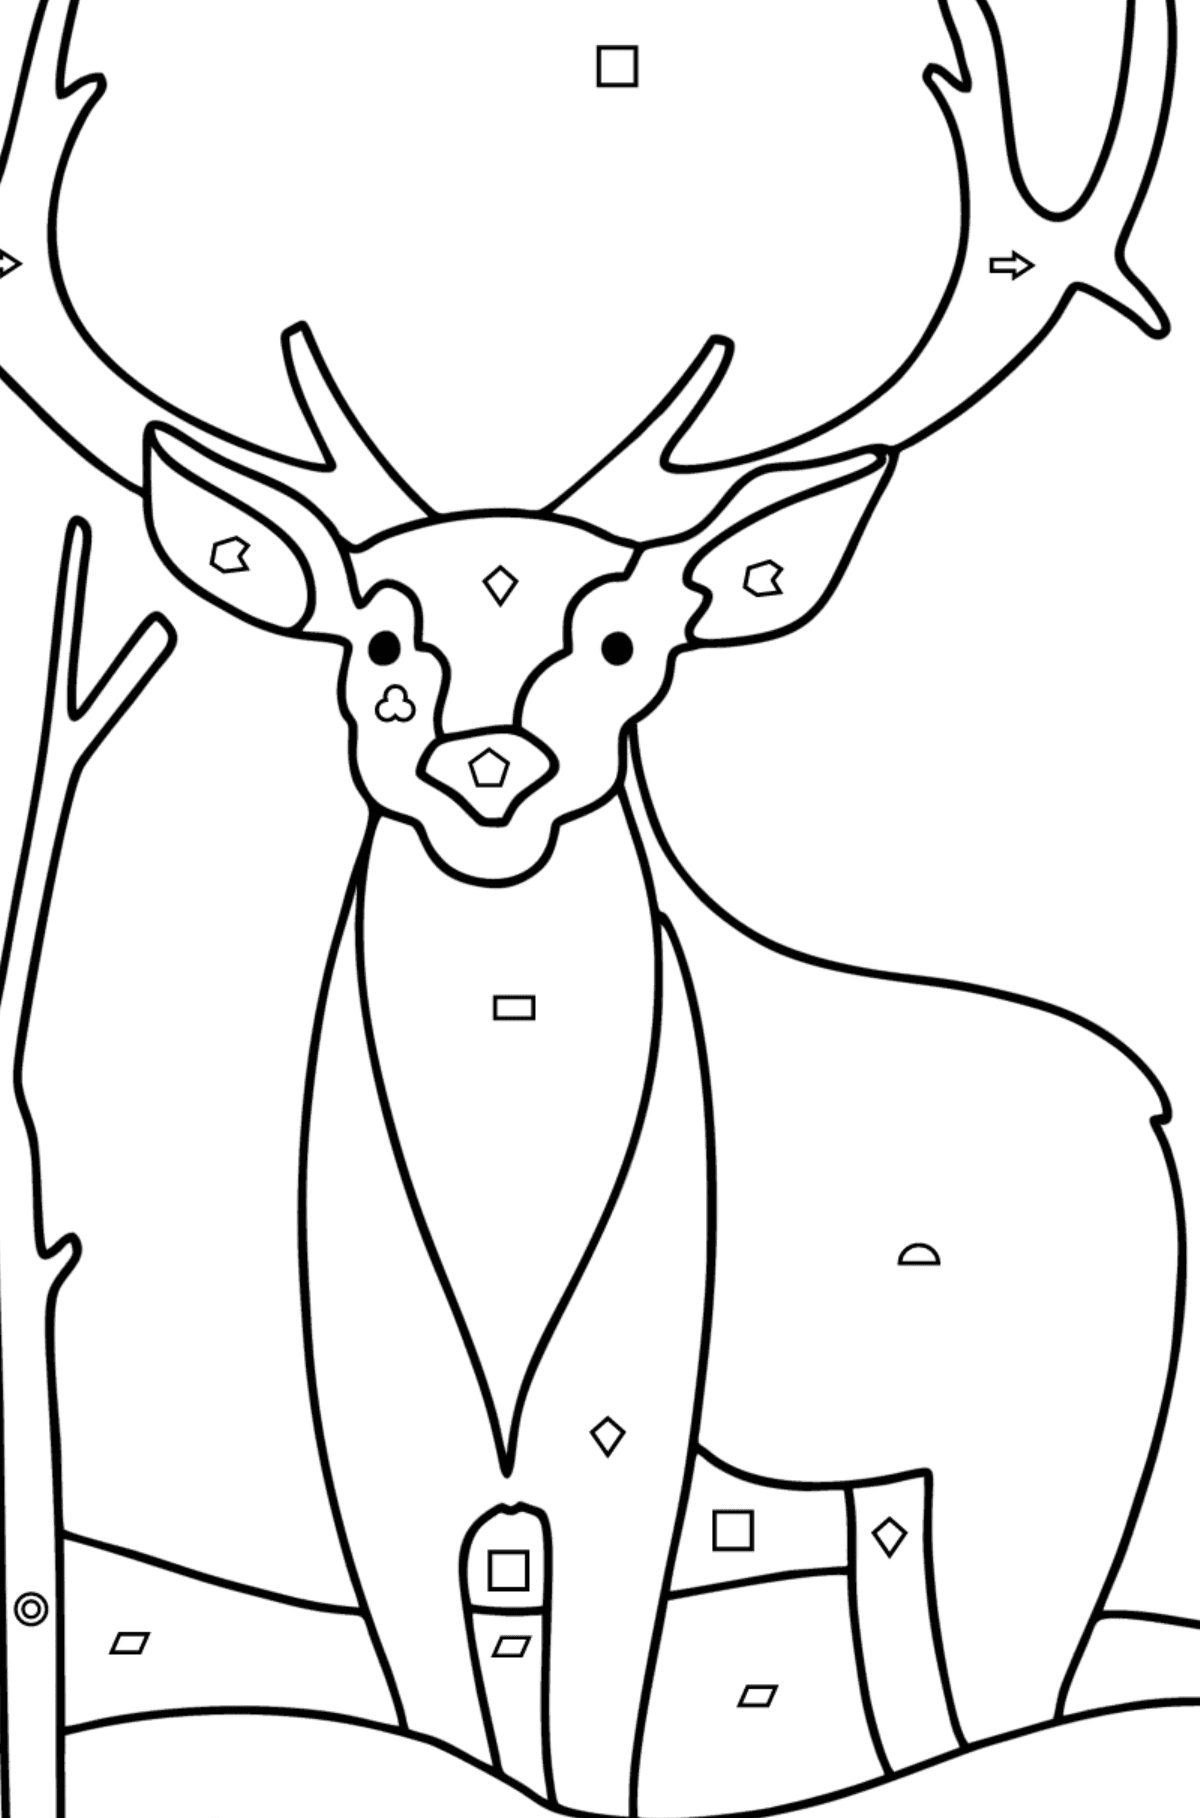 Kış ormandaki geyik boyama sayfası - Geometrik Şekillerle Boyama çocuklar için